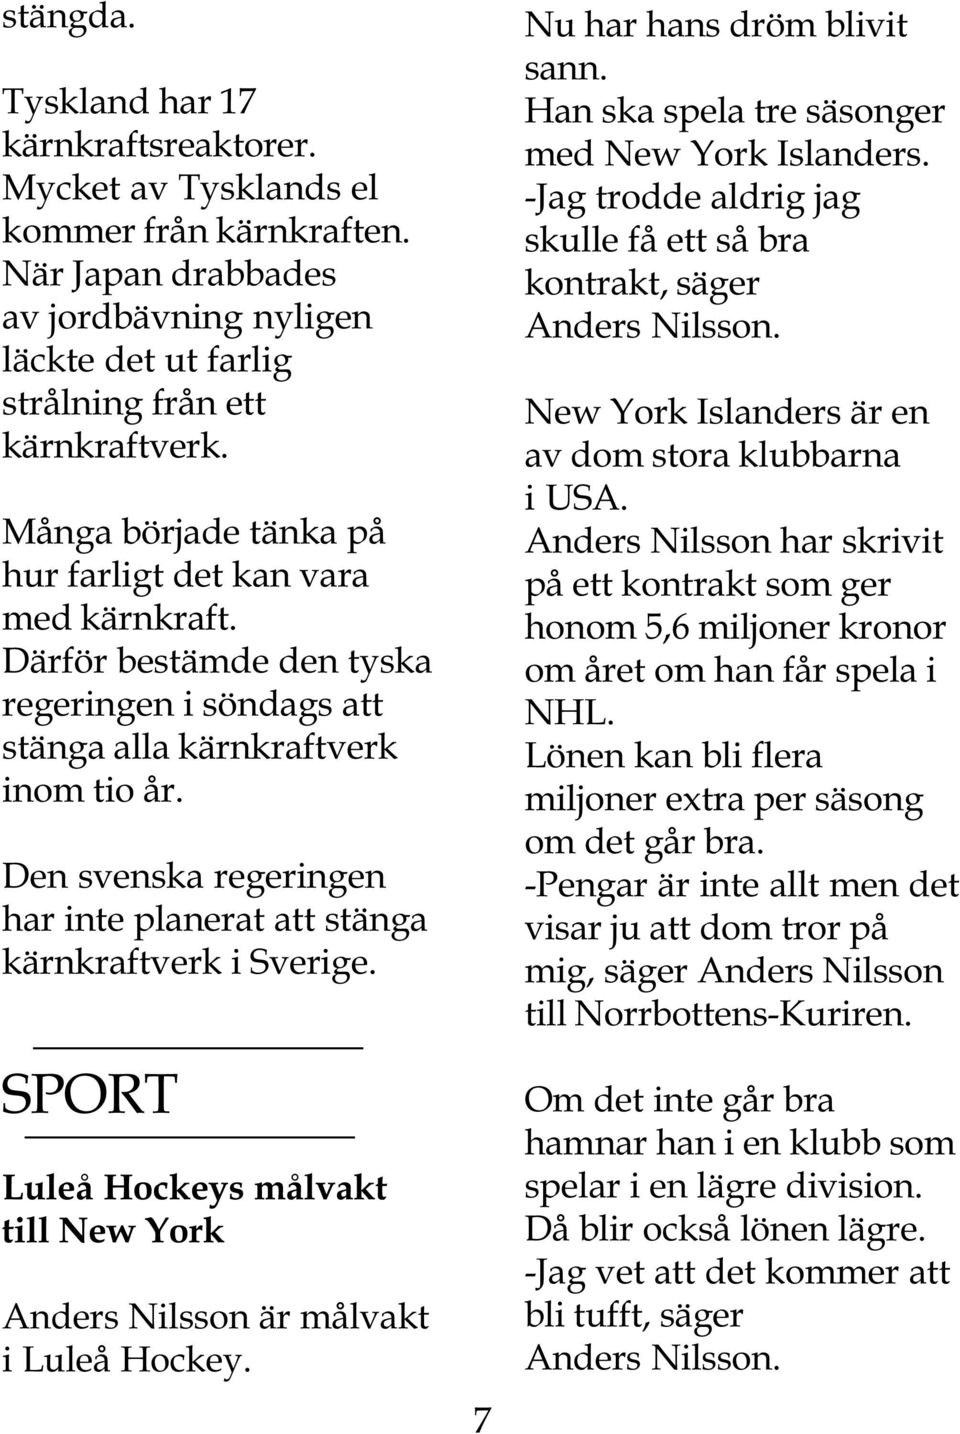 Den svenska regeringen har inte planerat att stänga kärnkraftverk i Sverige. SPORT Luleå Hockeys målvakt till New York Anders Nilsson är målvakt i Luleå Hockey. 7 Nu har hans dröm blivit sann.